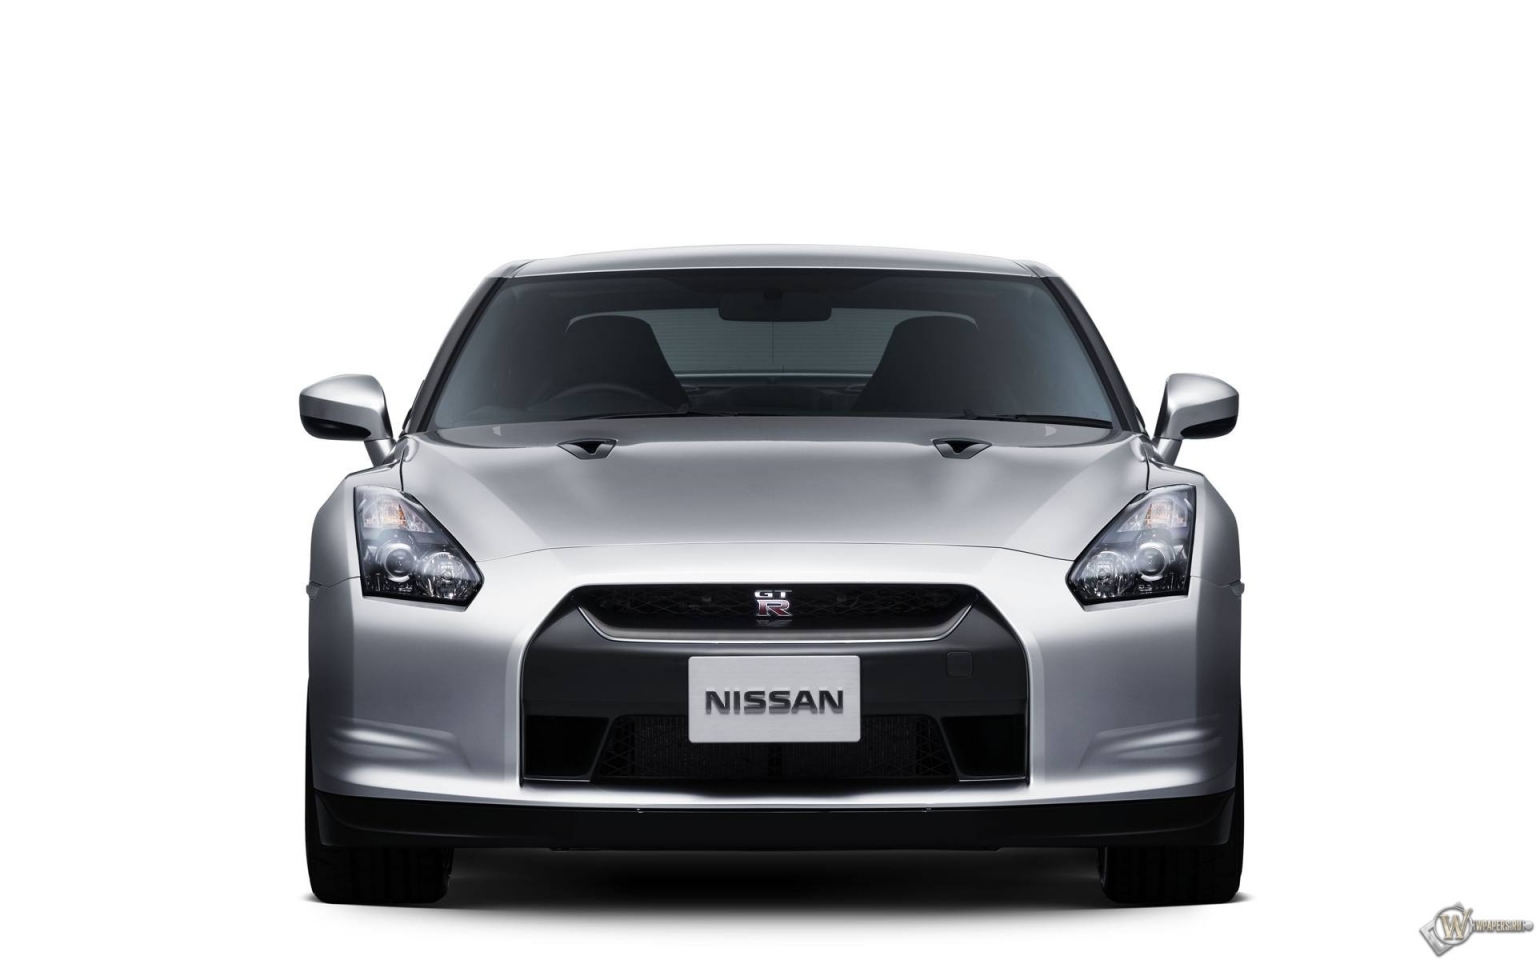 Nissan GTR 1536x960